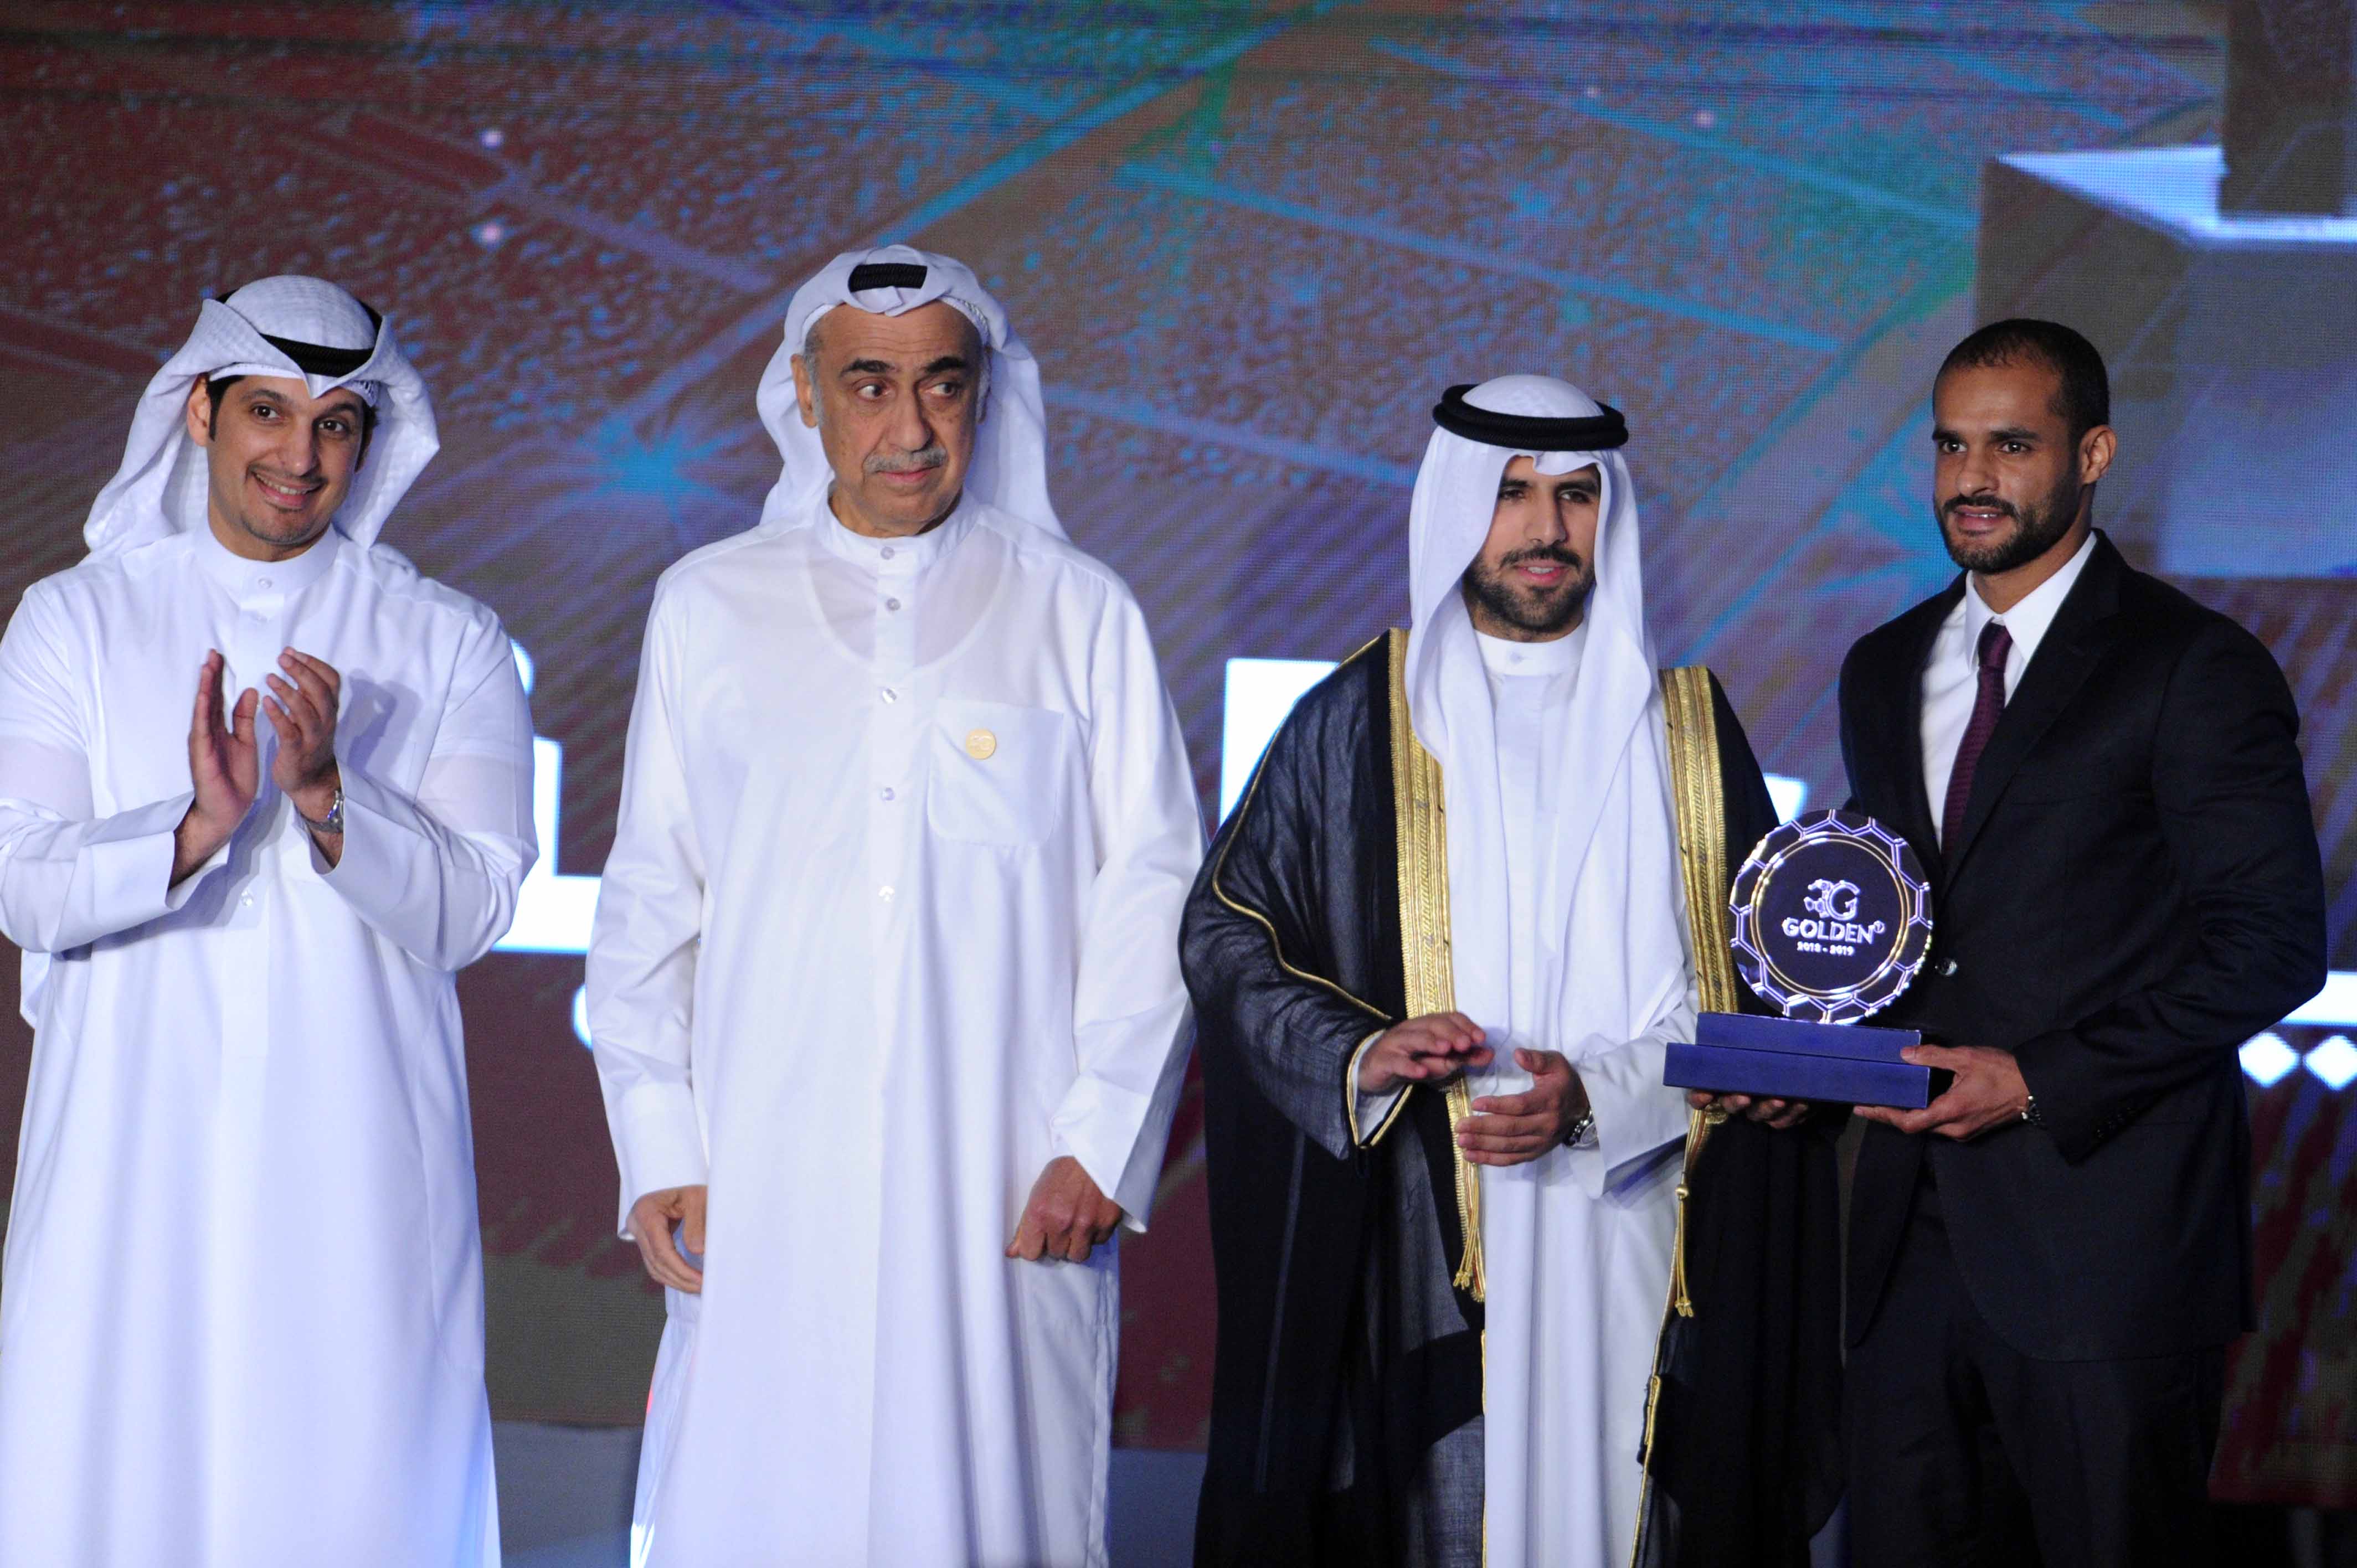 Qadsiya SC player Bader Al-Mutawa won the Golden One award